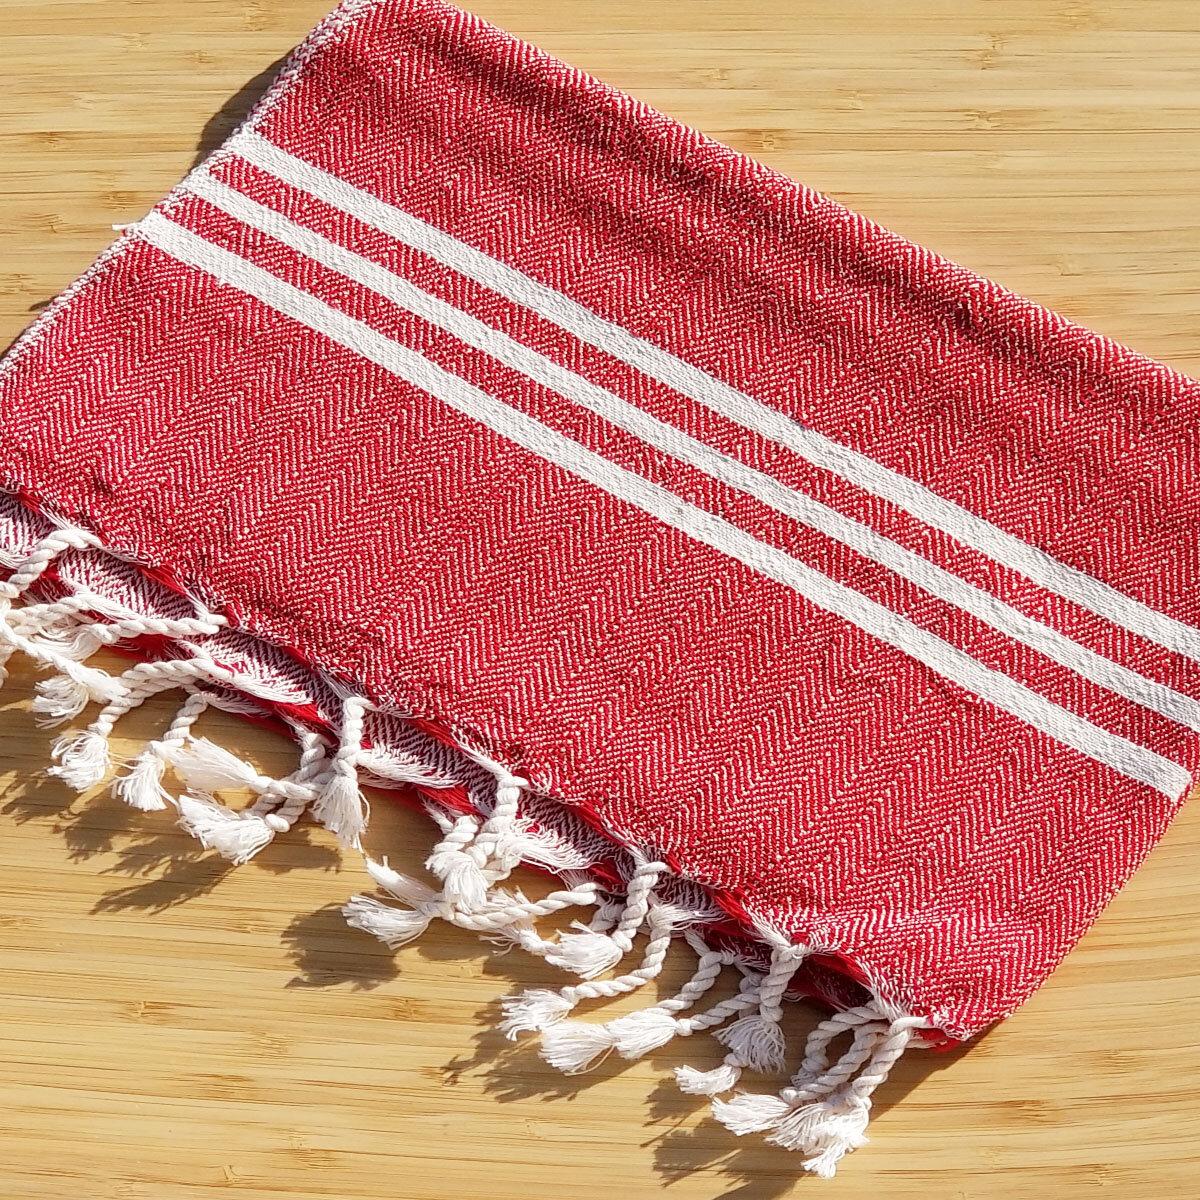 Handloomed red Turkish bath towel